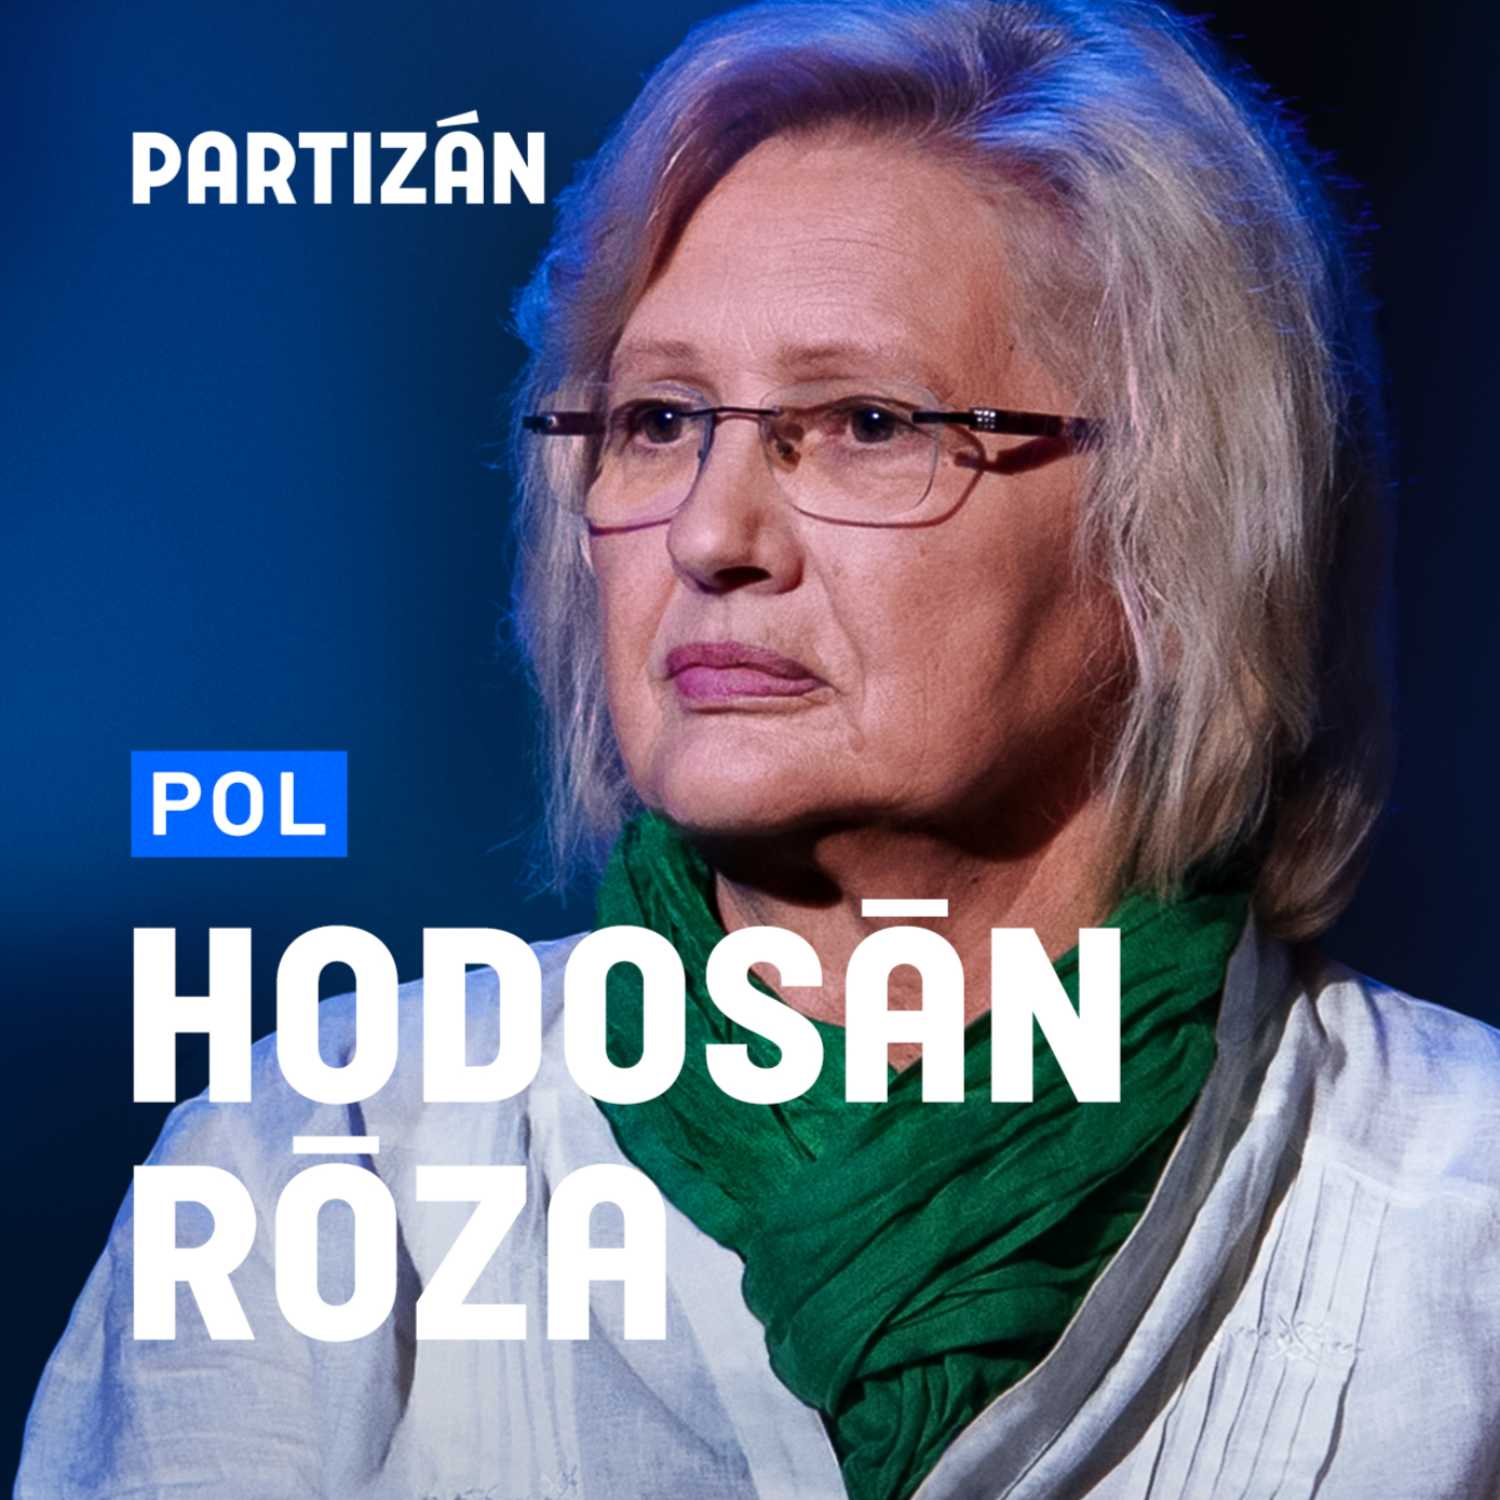 Fodor Gábor úgy váltogatja a nézeteit, ahogy a Fidesz | Interjú Hodosán Rózával | PartizánPOL